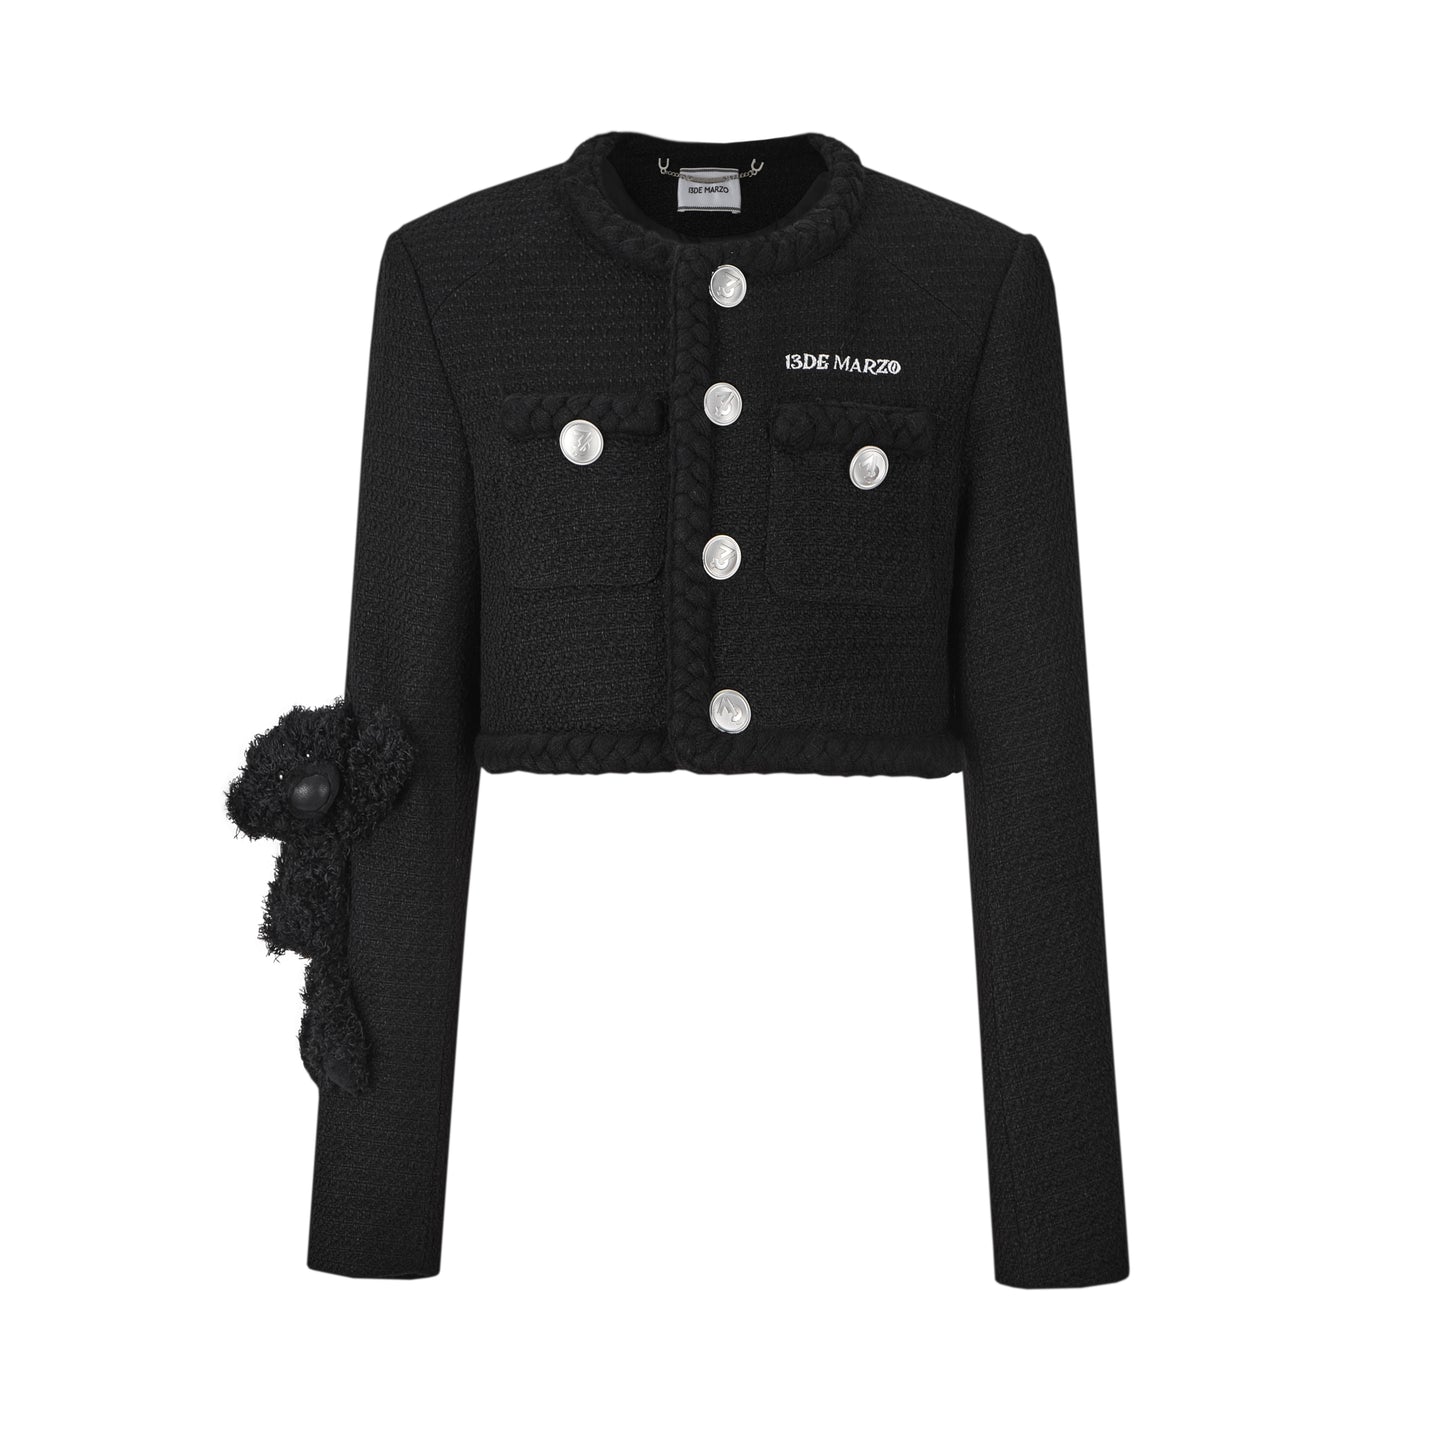 13DE MARZO Classic Weave Tweed Short Jacket